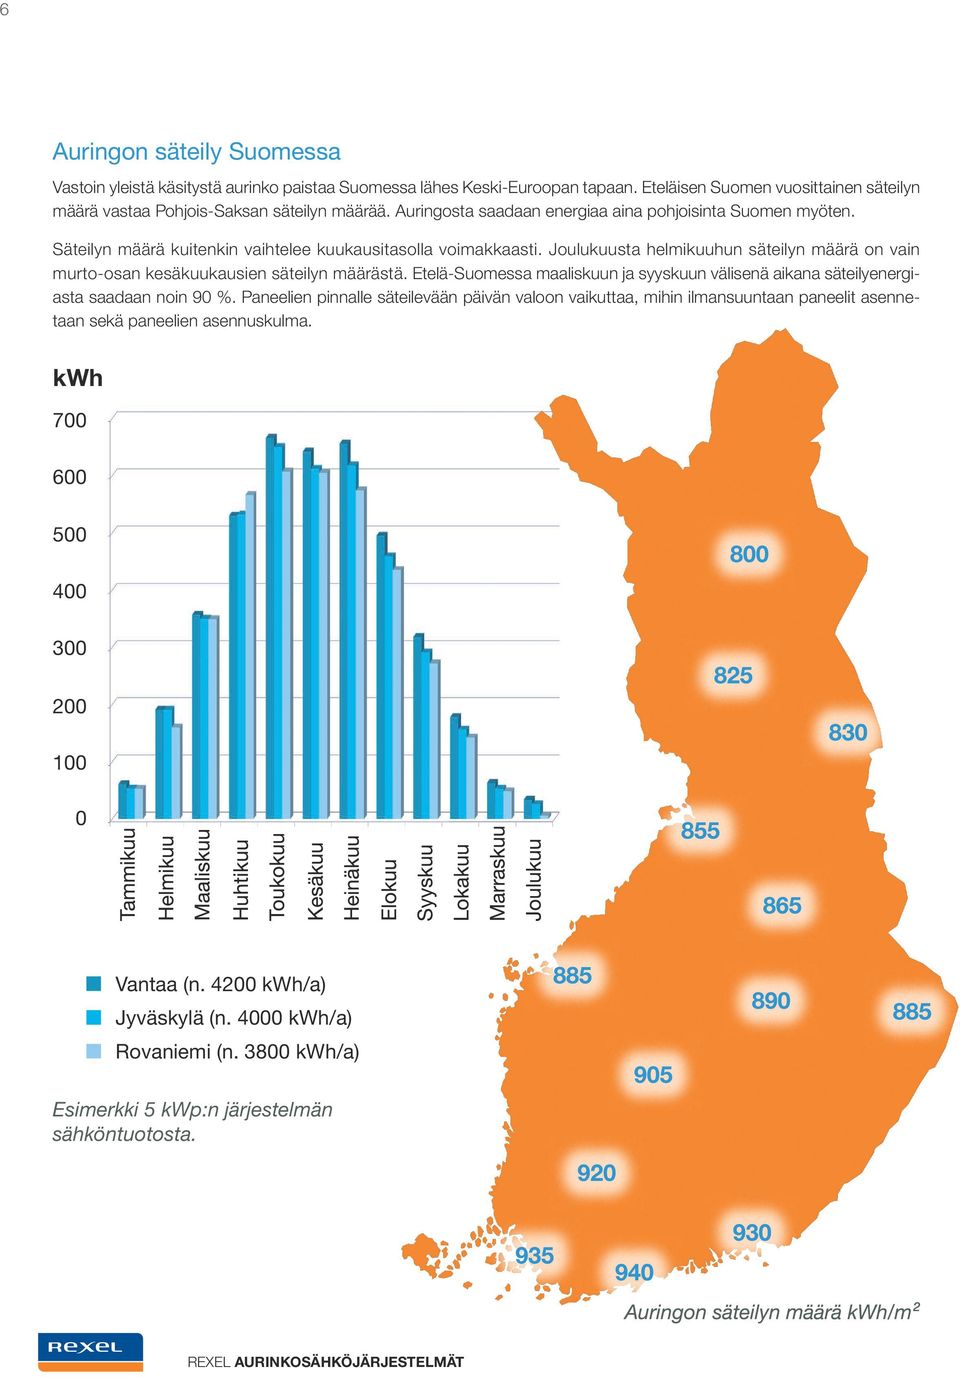 Joulukuusta helmikuuhun säteilyn määrä on vain murto-osan kesäkuukausien säteilyn määrästä. Etelä-Suomessa maaliskuun ja syyskuun välisenä aikana säteilyenergiasta saadaan noin 90 %.